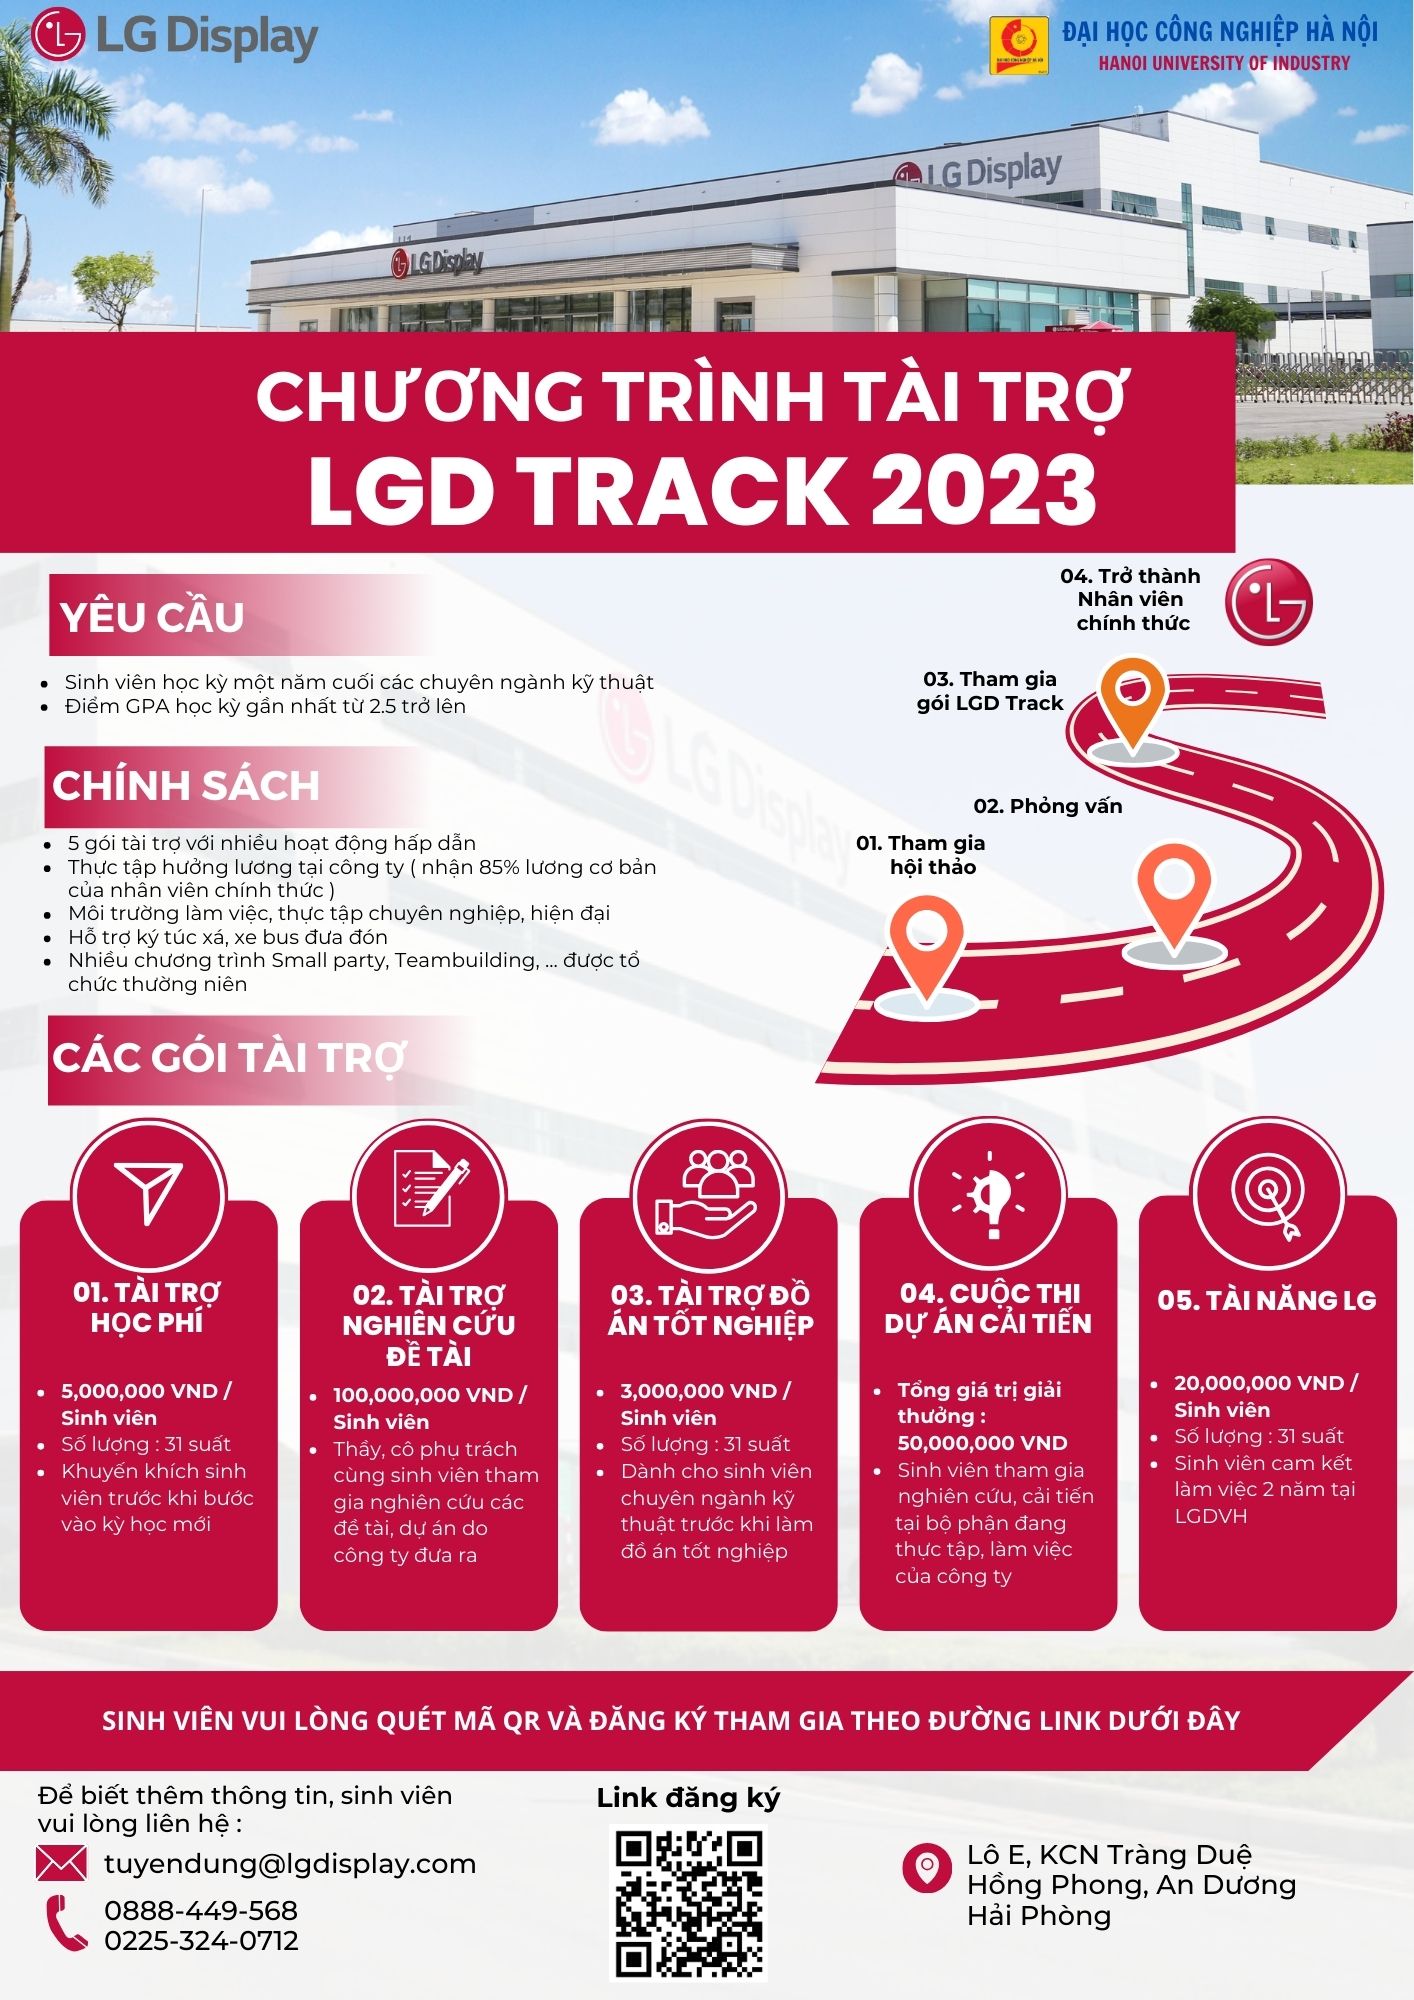 Thông báo Chương trình Tài trợ LGD Track 2023 và Phỏng vấn thực tập của Công ty TNHH LG Display Việt Nam Hải Phòng